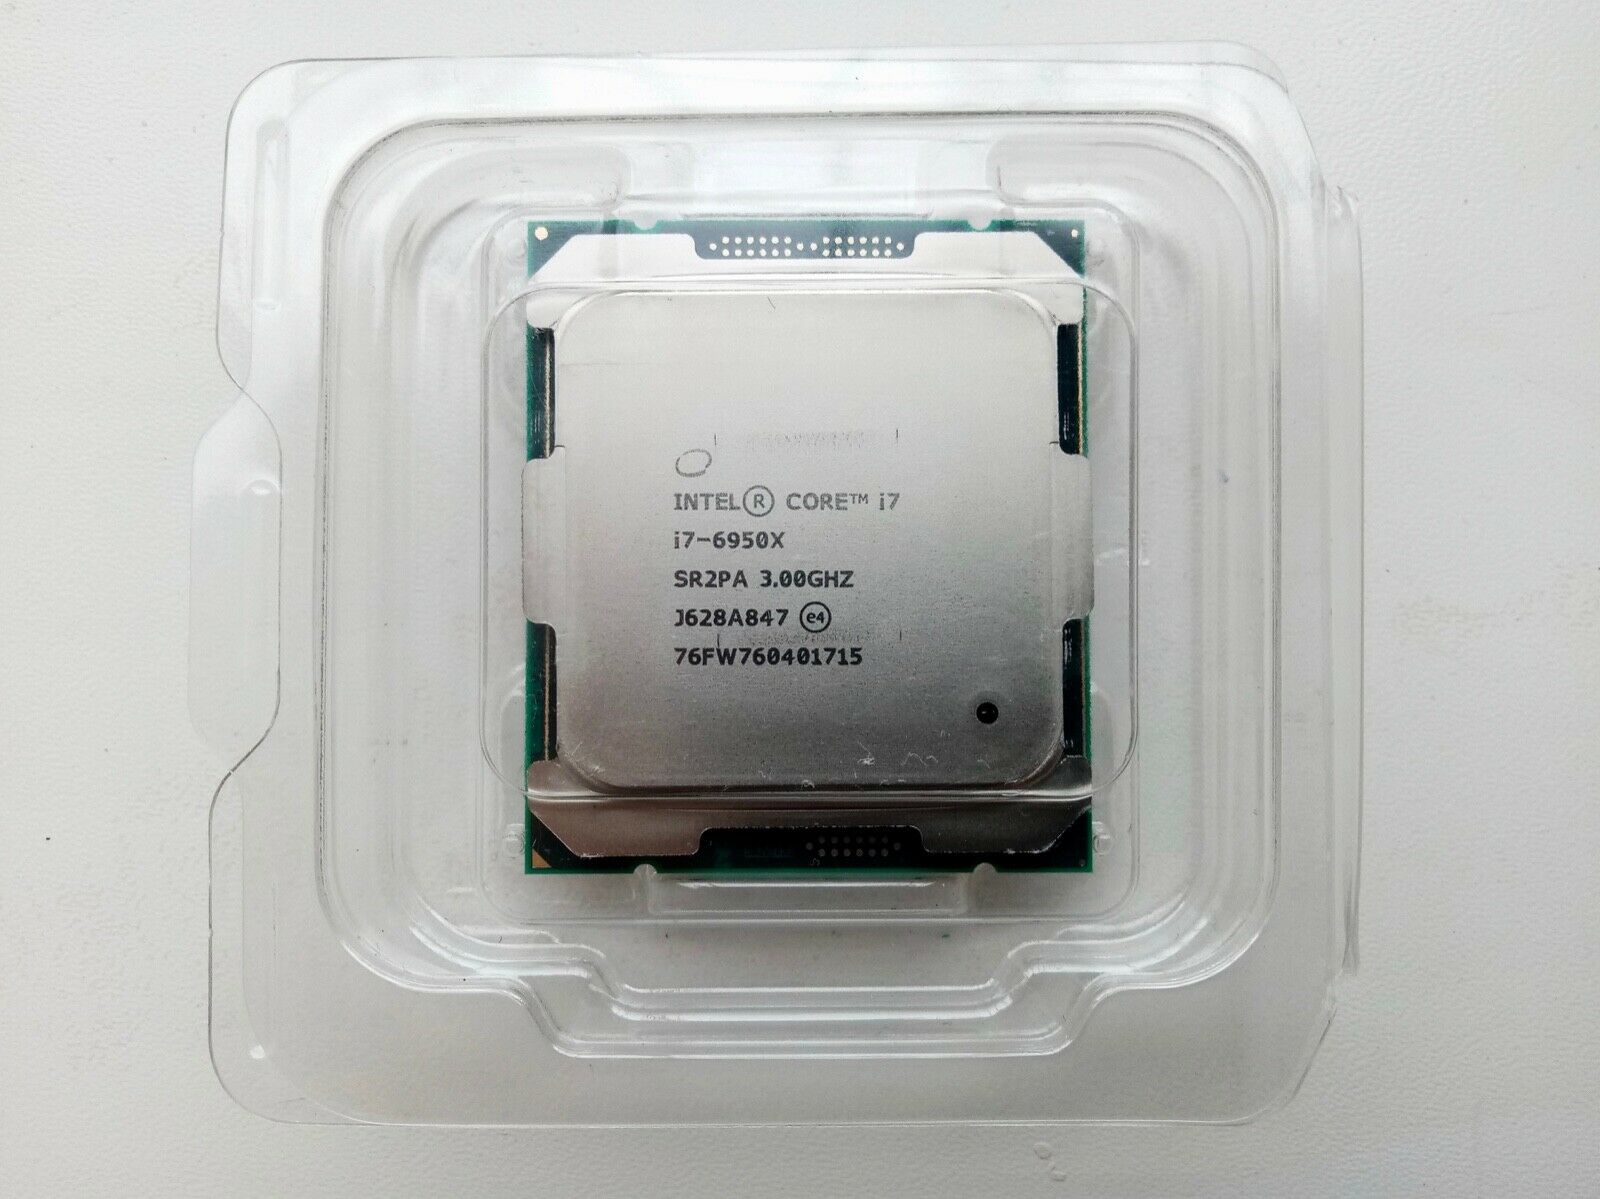 Intel i7-6950X 25M Broadwell-E 10-Core 3.0 GHz BX80671I76950X Socket LGA 2011-v3 140W (SR2PA) Desktop Processor